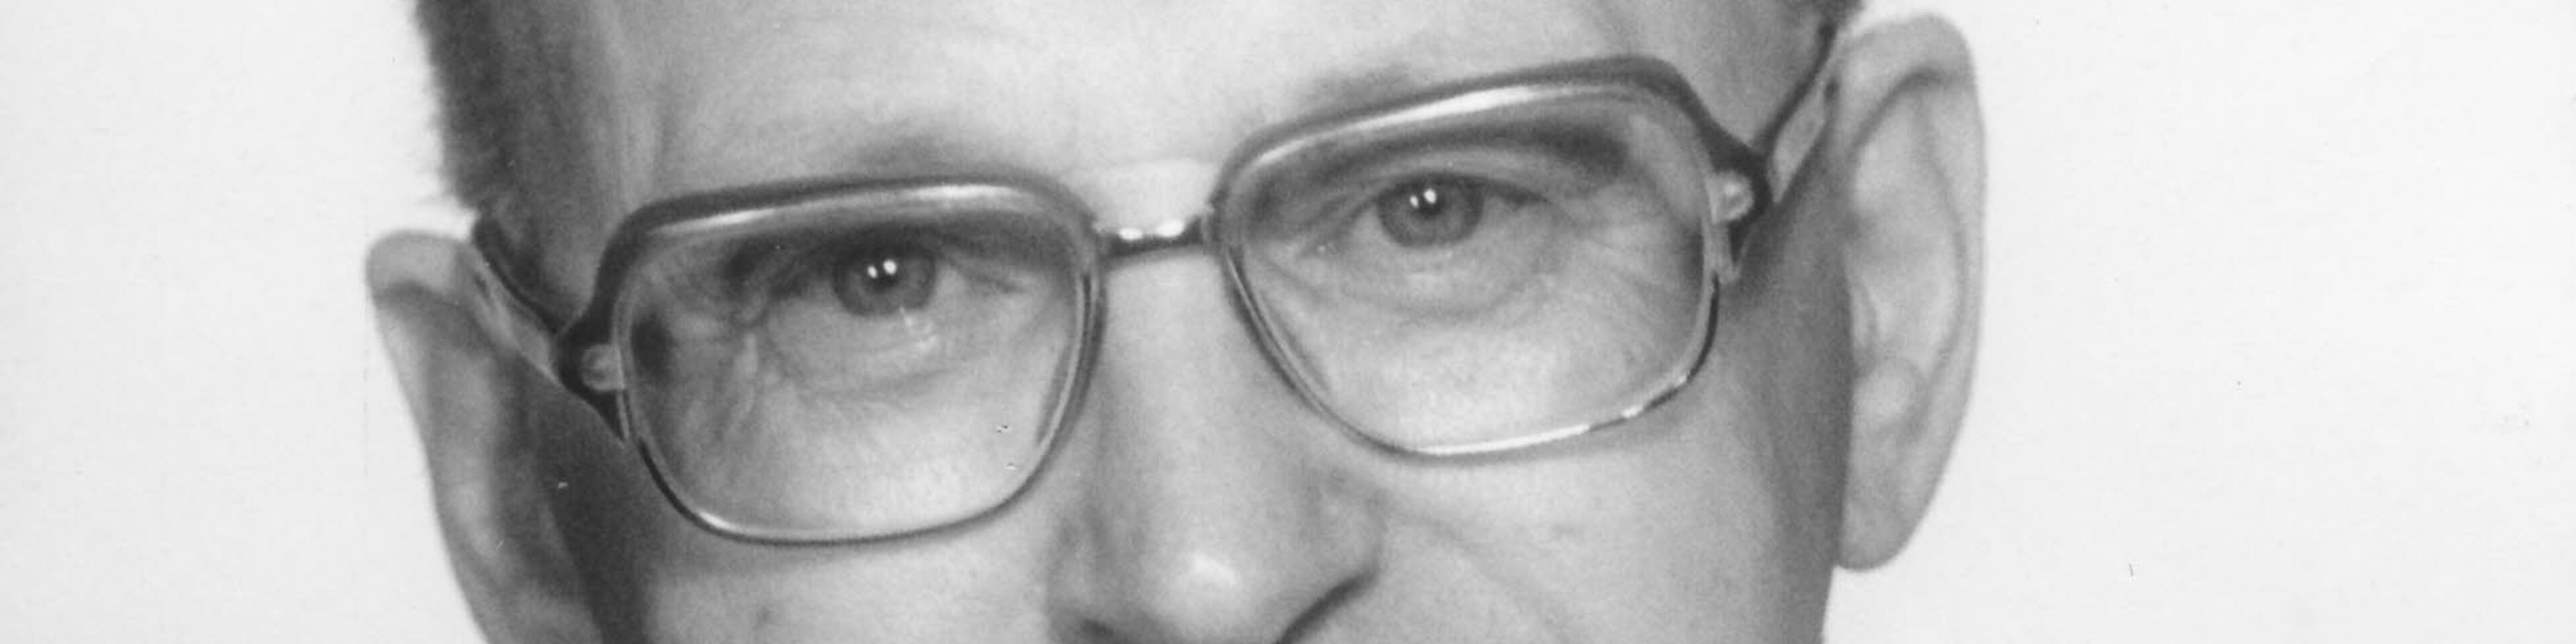 Prälat Franz Xaver Ertl, Caritasdirektor 1975-1986, Direktor des Bayerischen Landescaritasverbands 1986-1993, Portraitfoto, ca. 1980. | © (Fotograf unbekannt, Archiv des DiCV München und Freising e. V., Fotosammlung)